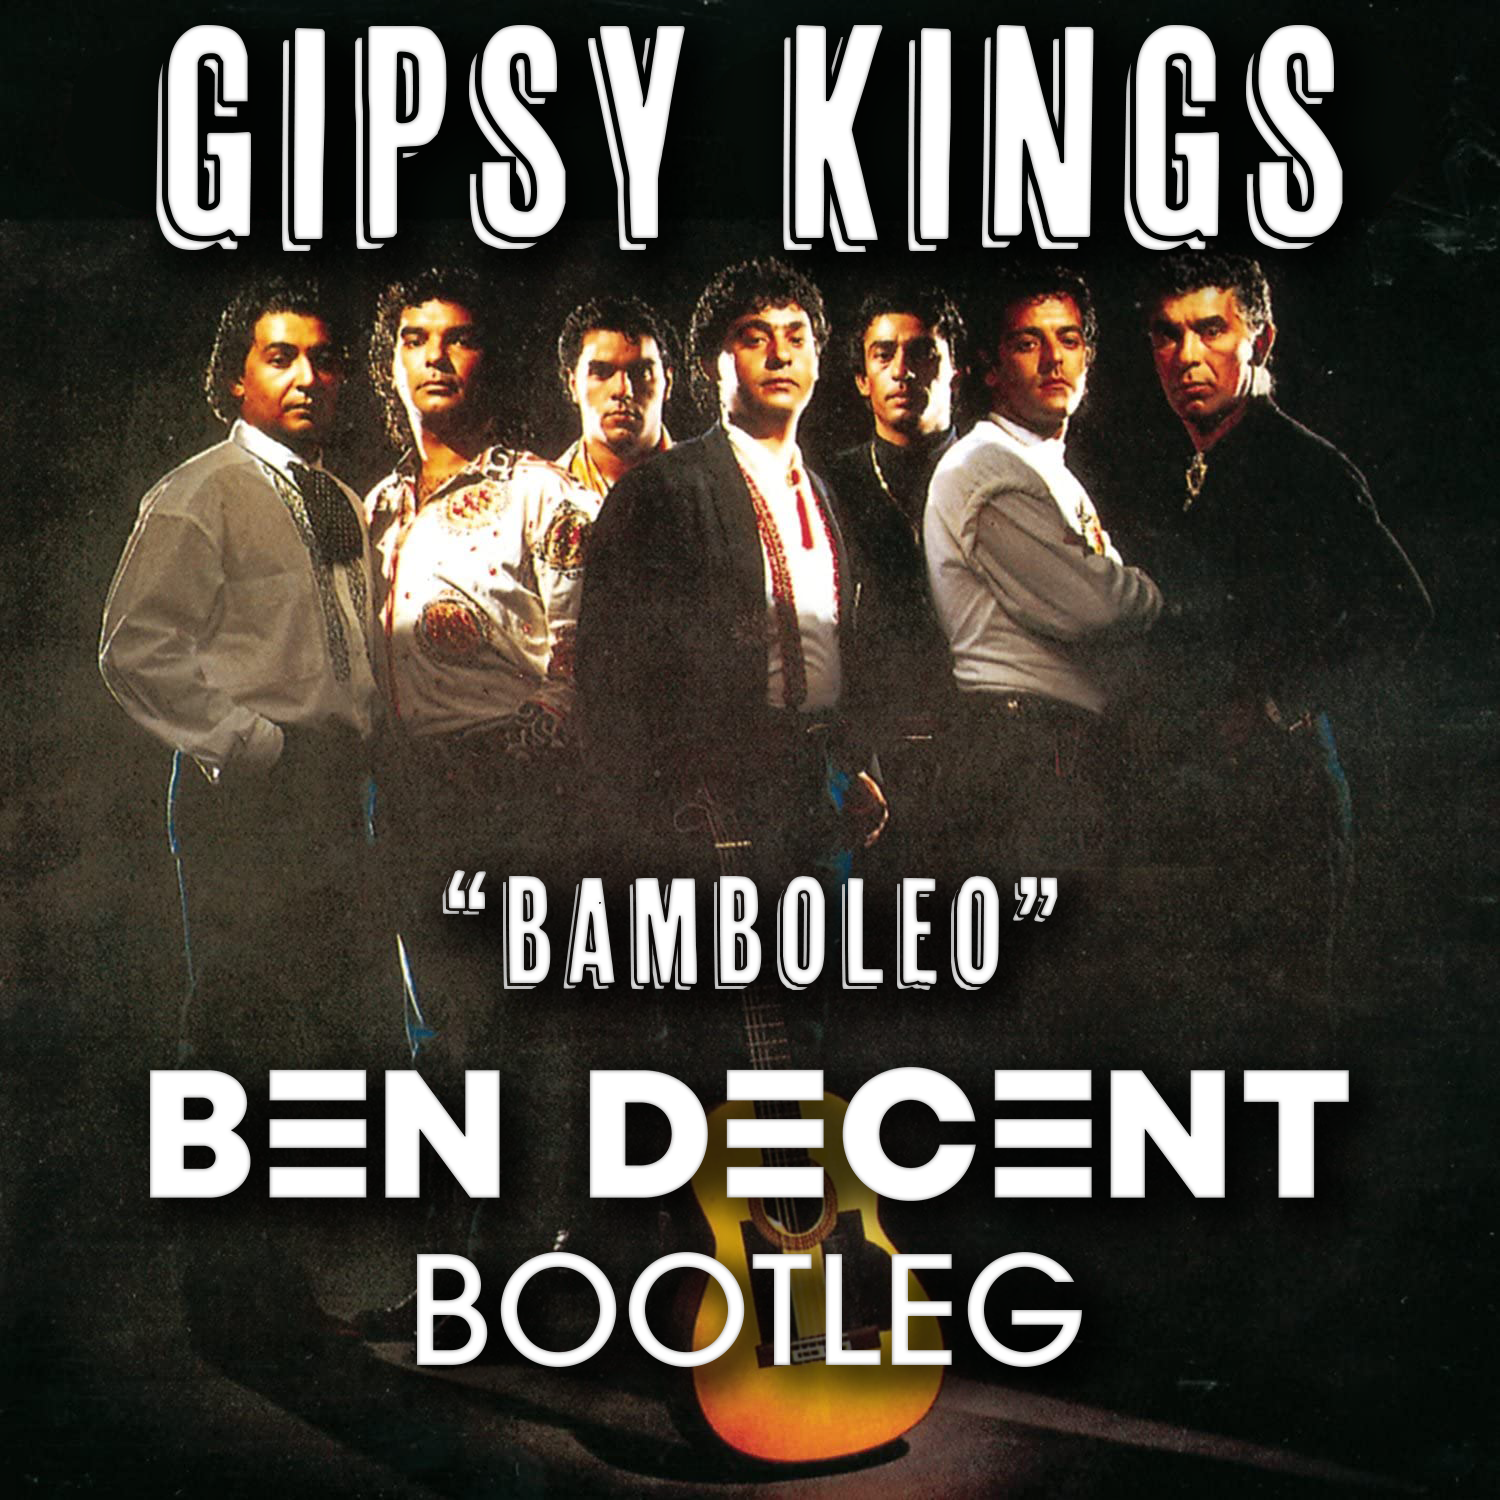 Gipsy Kings. Gipsy Kings Bamboleo. Gipsy Kings "Gipsy Kings". Gipsy Kings 1988 Bamboleo. Gipsy kings remix